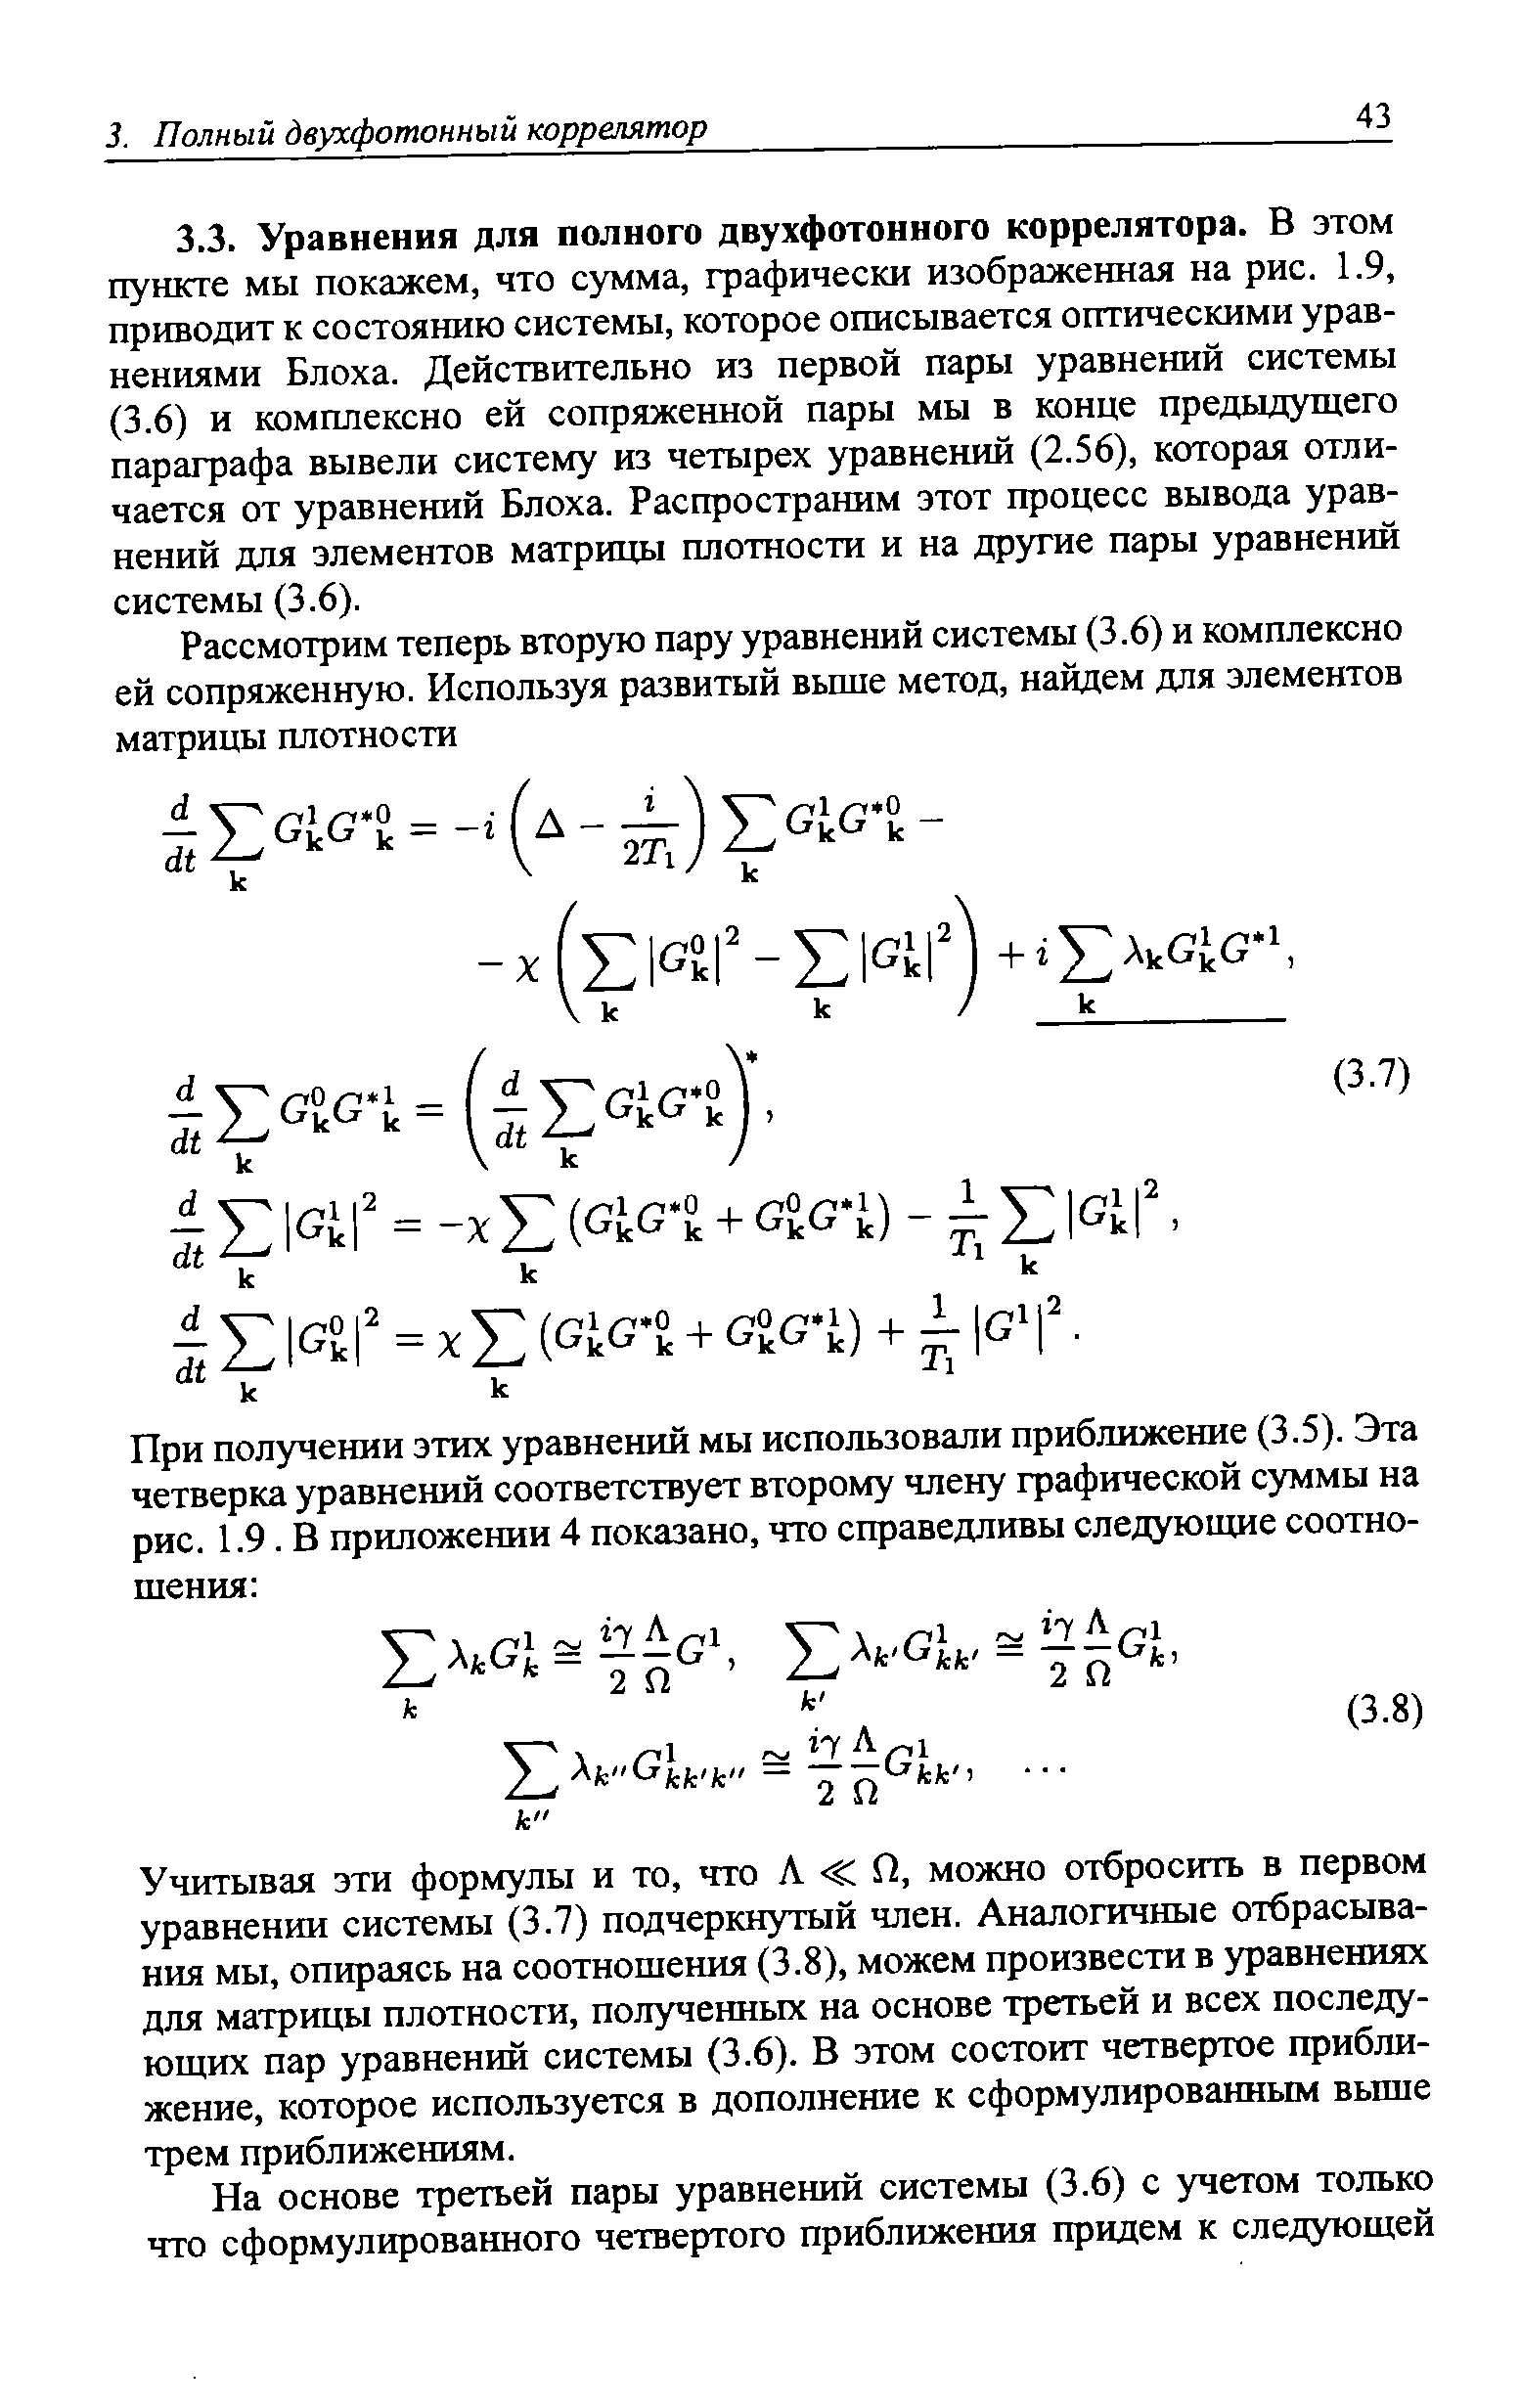 Учитывая эти формулы и то, что Л П, можно отбросить в первом уравнении системы (3.7) подчеркнутый член. Аналогичные отбрасывания мы, опираясь на соотношения (3.8), можем произвести в уравнениях для матрицы плотности, полученных на основе третьей и всех последующих пар уравнений системы (3.6). В этом состоит четвертое приближение, которое используется в дополнение к сформулированным вьш1е трем приближениям.
